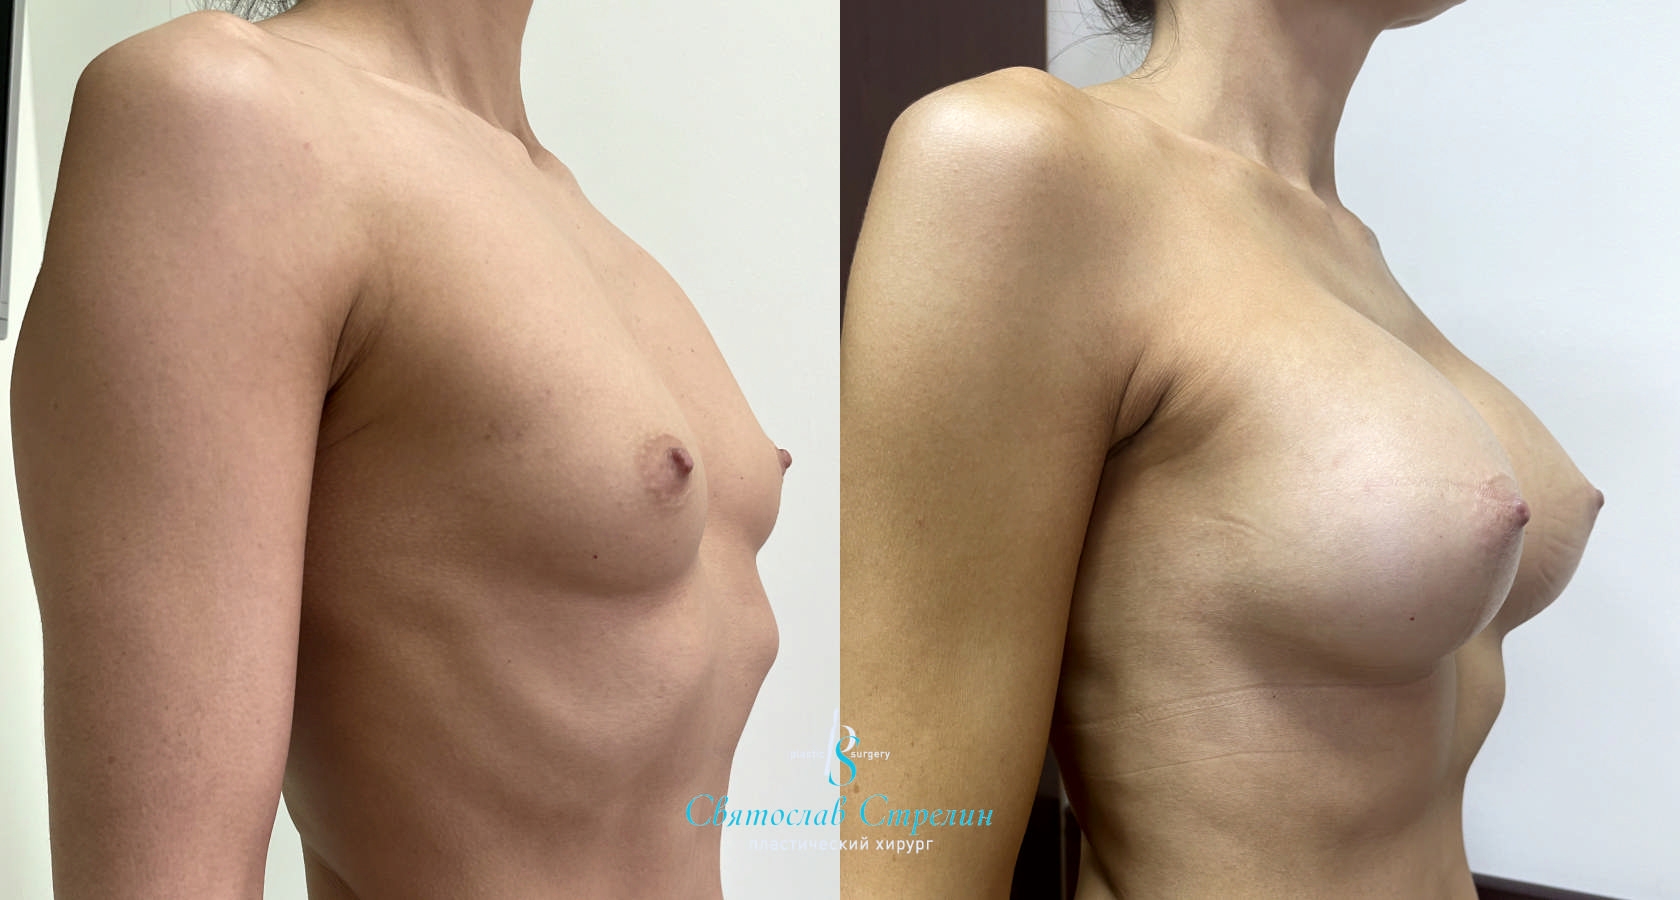 Увеличение груди, 2 месяца после операции, импланты Силимед 370 мл, анатомические, средняяв ысота, высокая проекция, доступ подмышечный